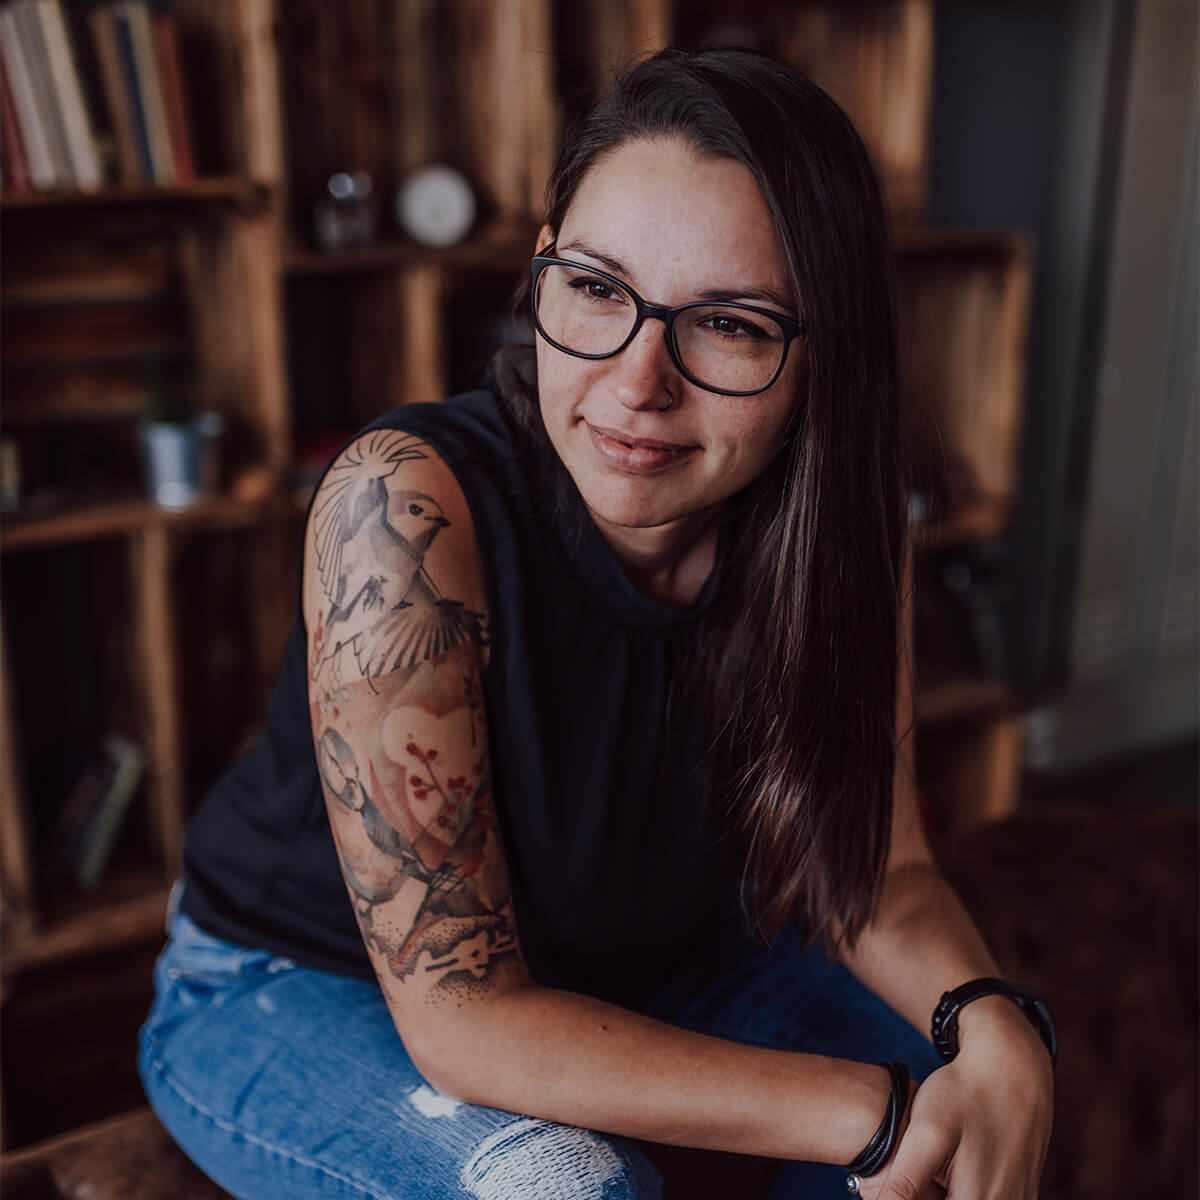 Kerstin Partheder Design & Illustration, Grafikerin aus Linz, sitzend, lächelnd mit Tatowierung auf rechtem Arm